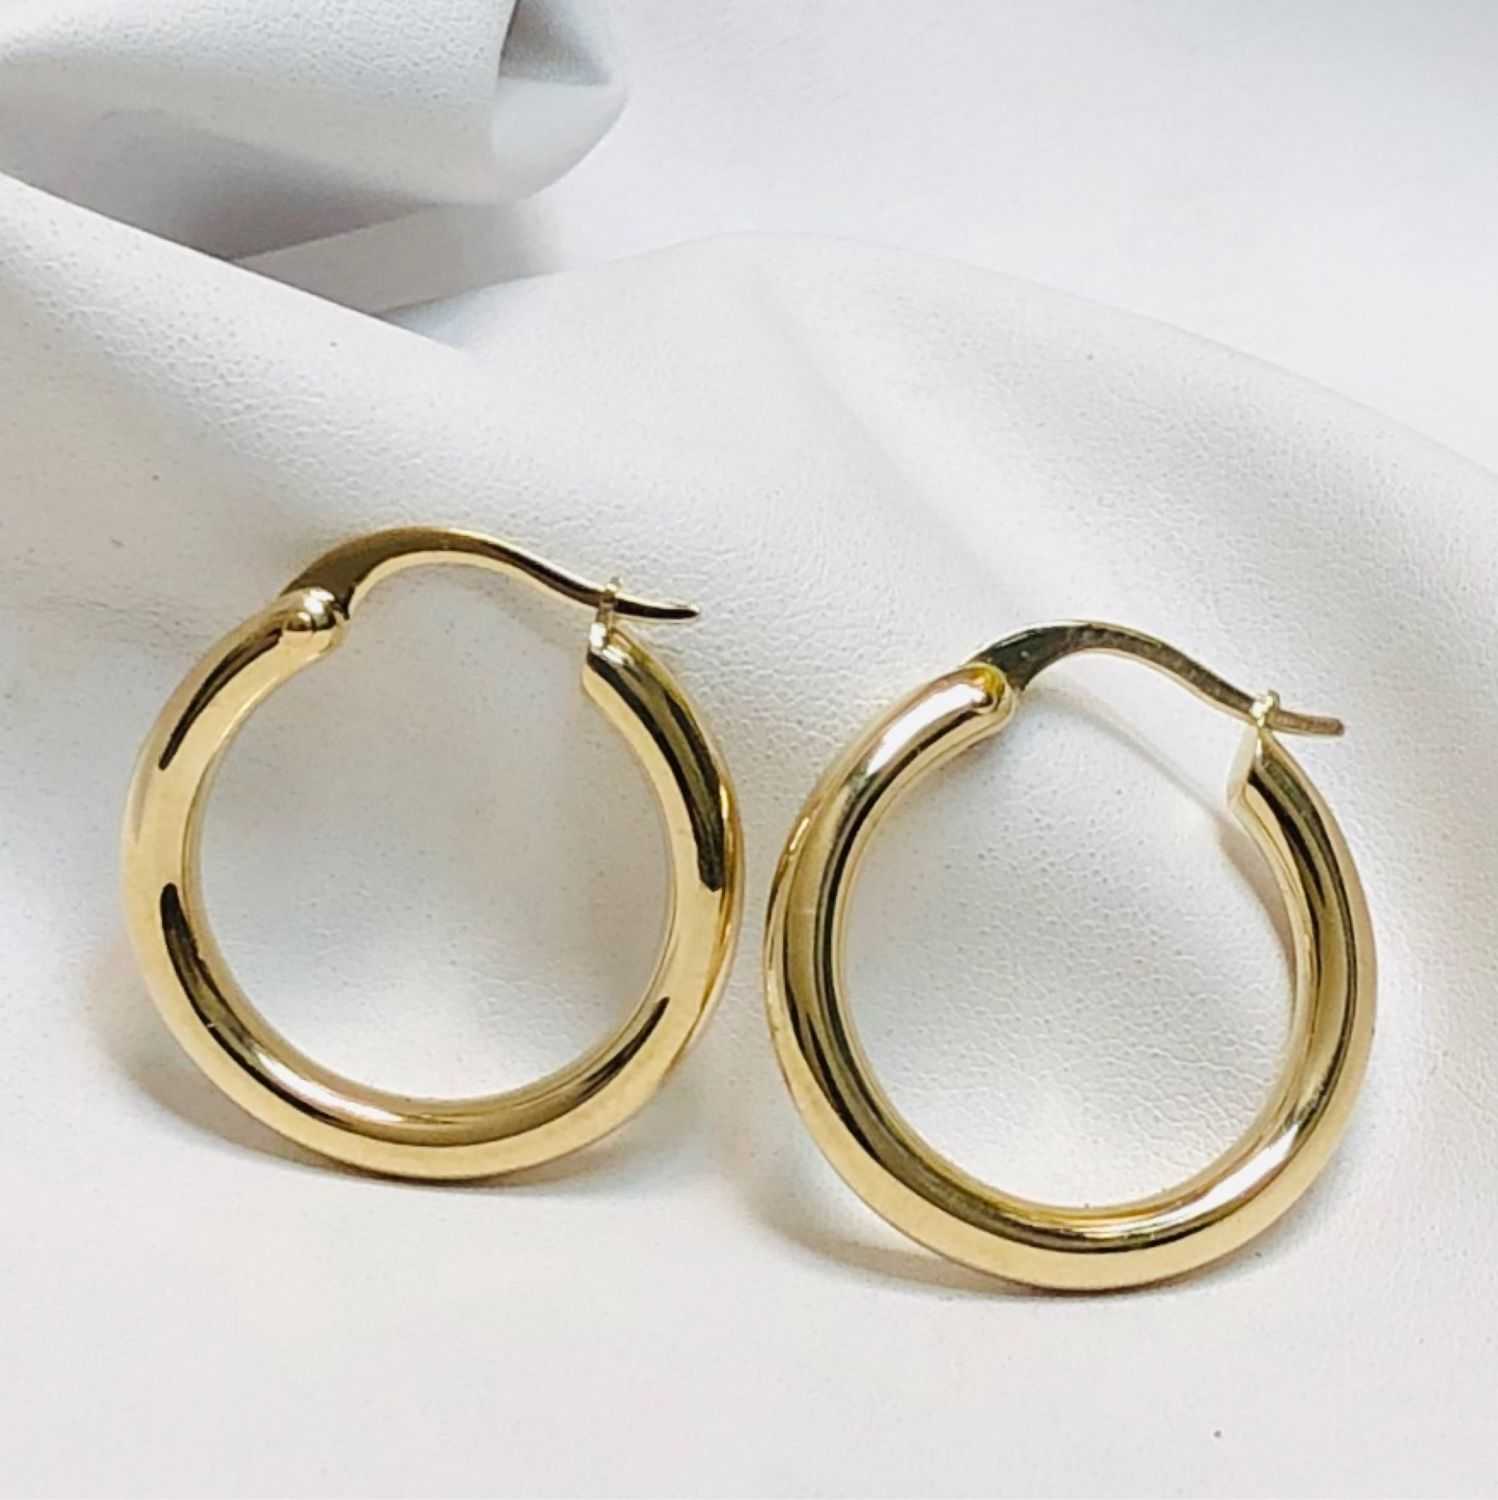 Мужские серьги в ухо (31 фото): на каком ухе носить, гвоздики, тоннели, кольца, обманки, золотые или серебрянные